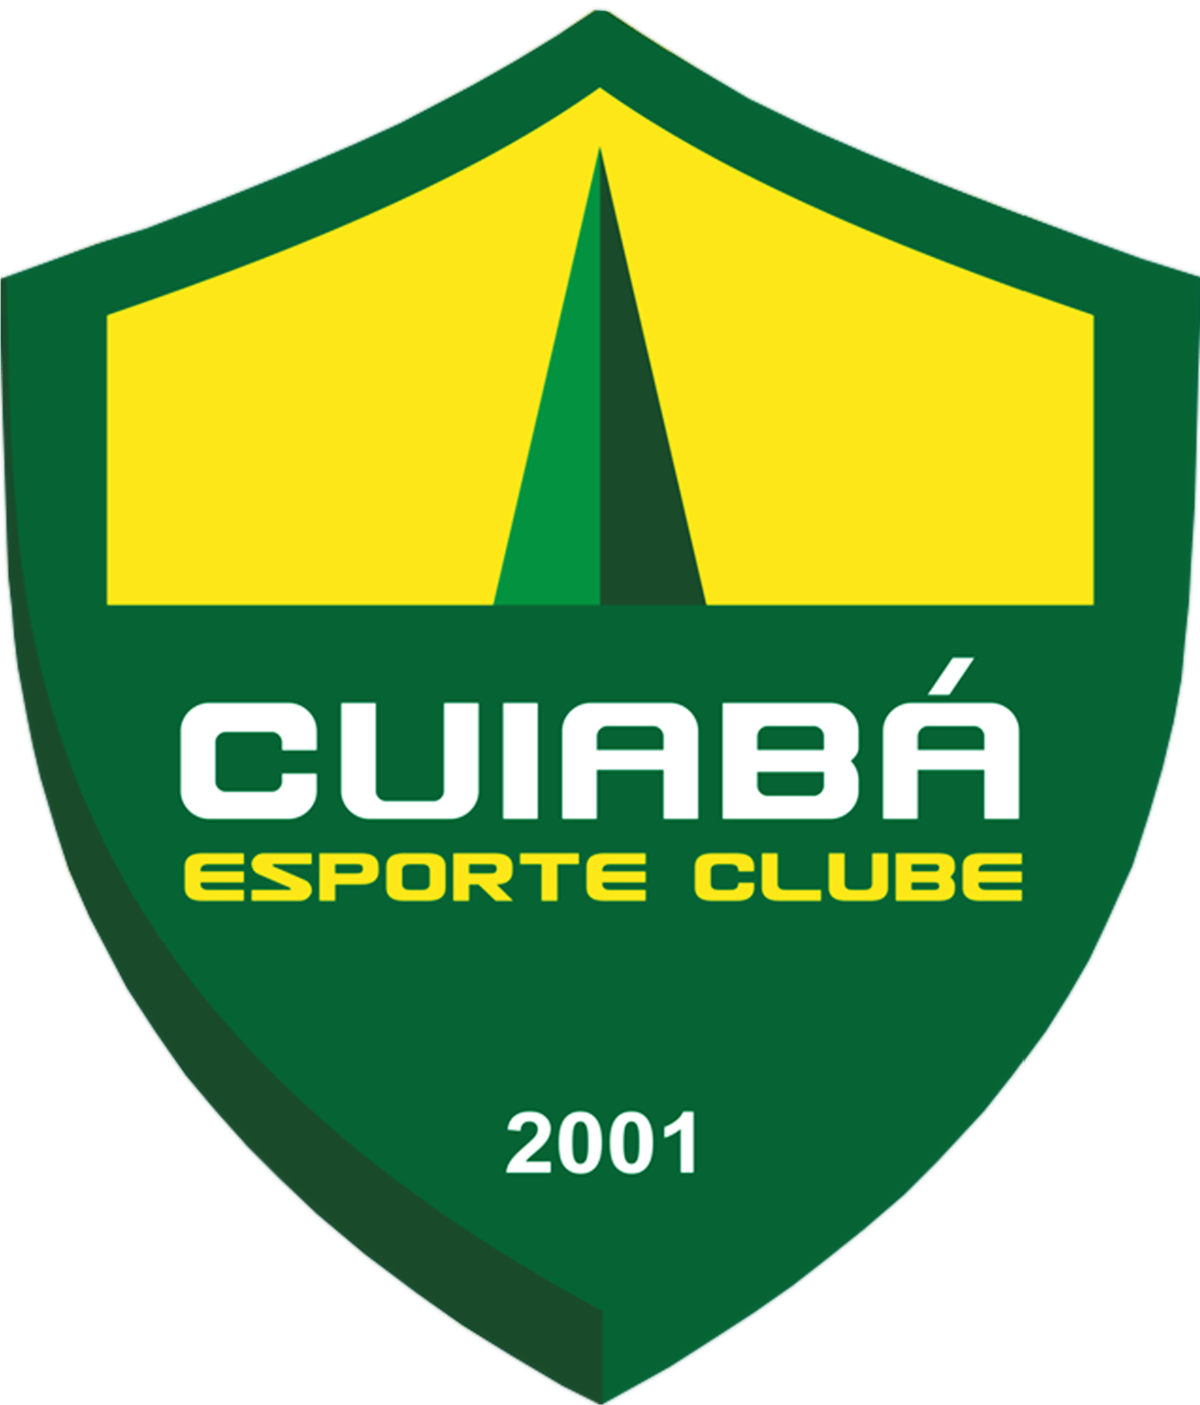 Cuiabá vs América-MG Prediction: Cuiabá must stop the run of defeats